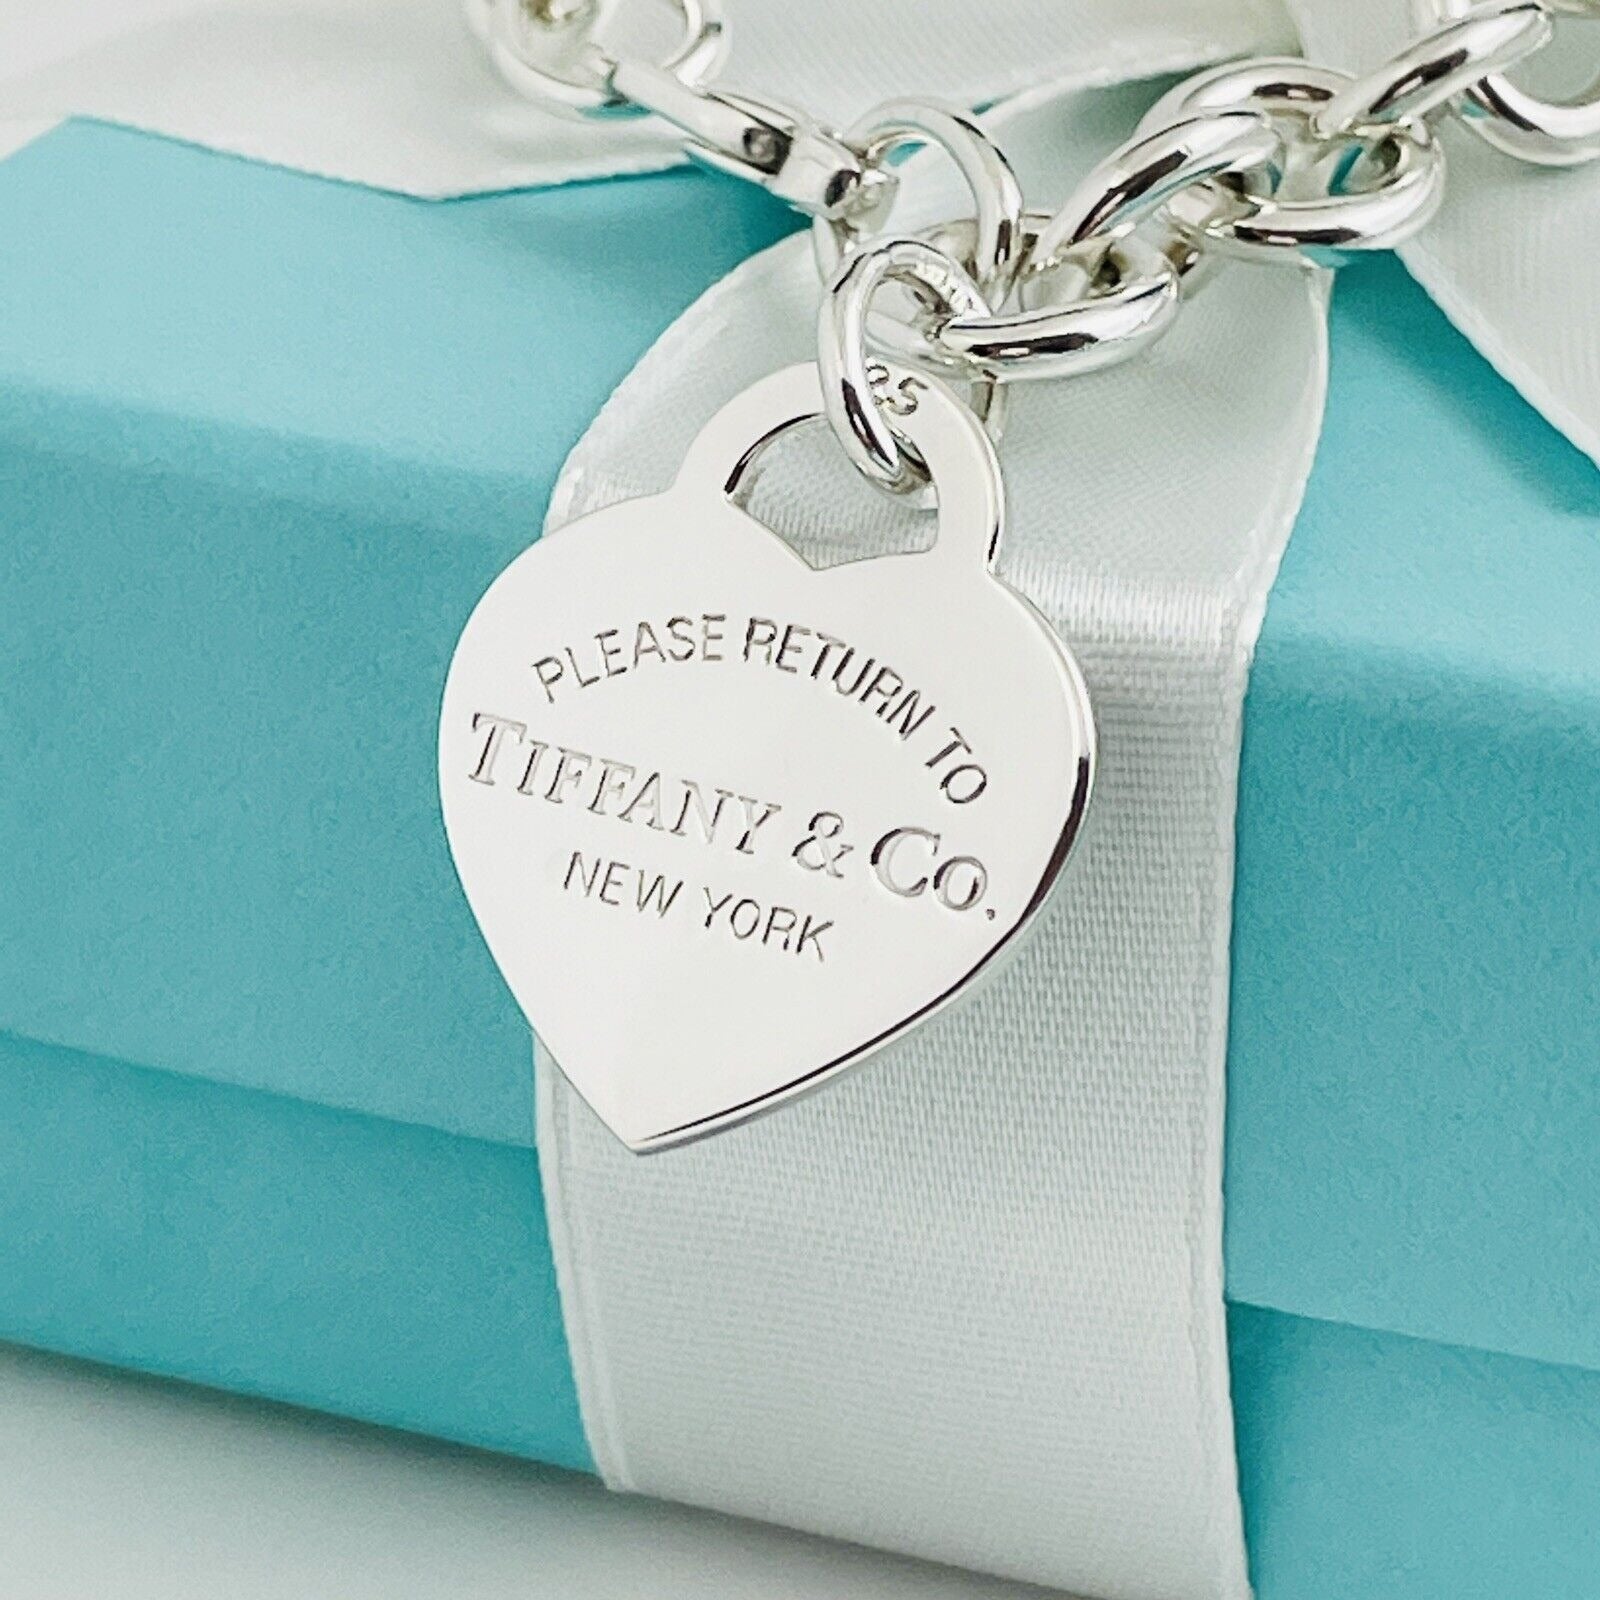 Tiffany HardWear Sterling Silver Link Bracelet | Tiffany & Co.